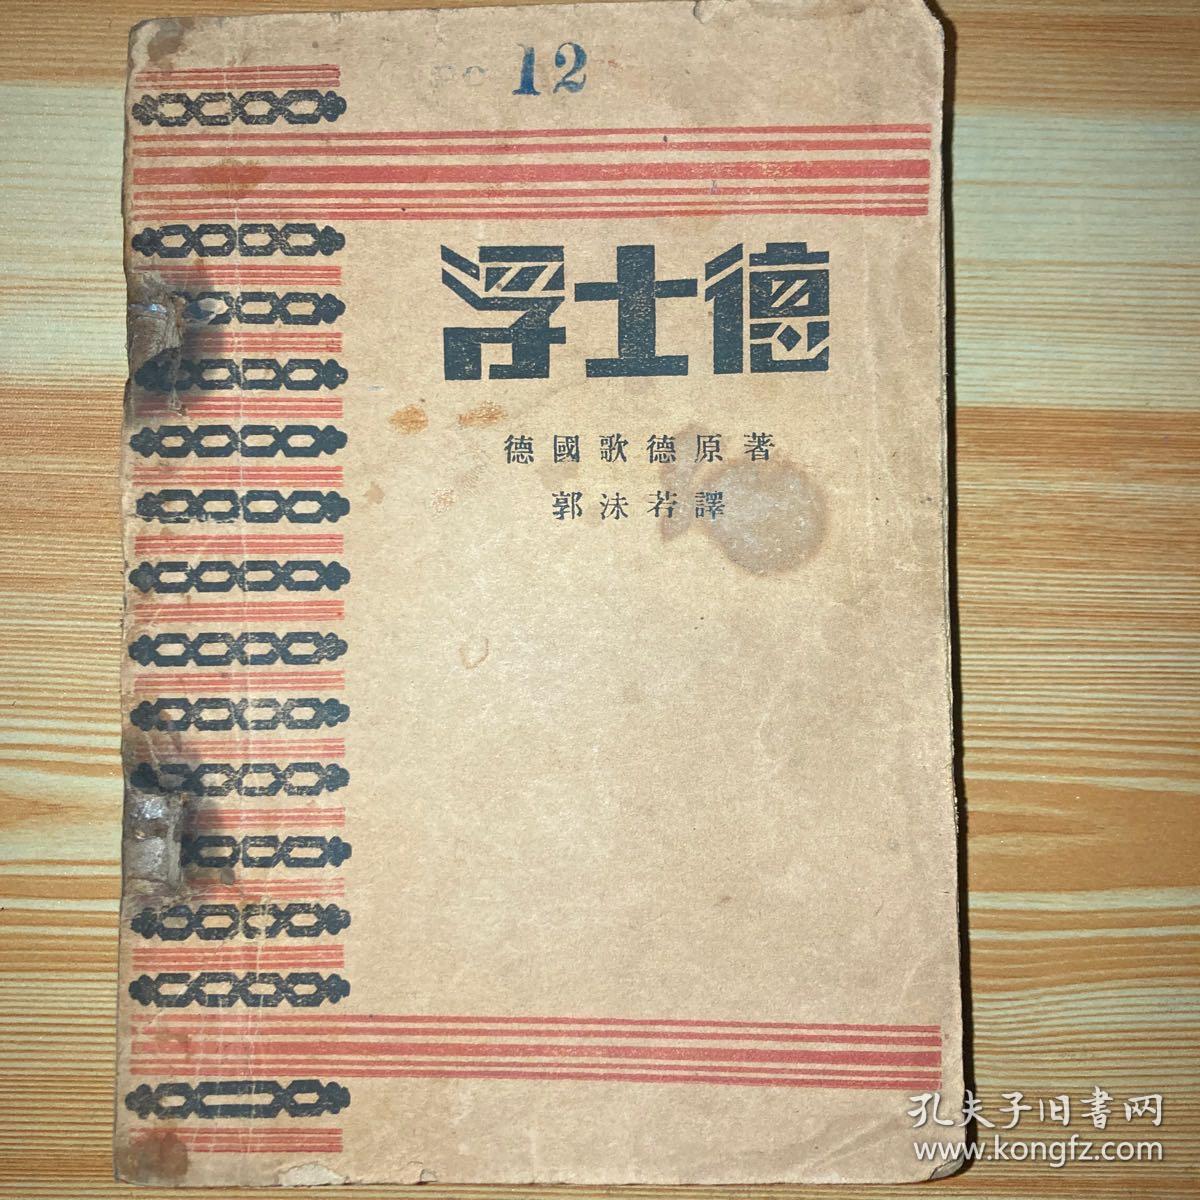 1928年 出版1000册
民国浮士德 郭沫若译
品相内页完整